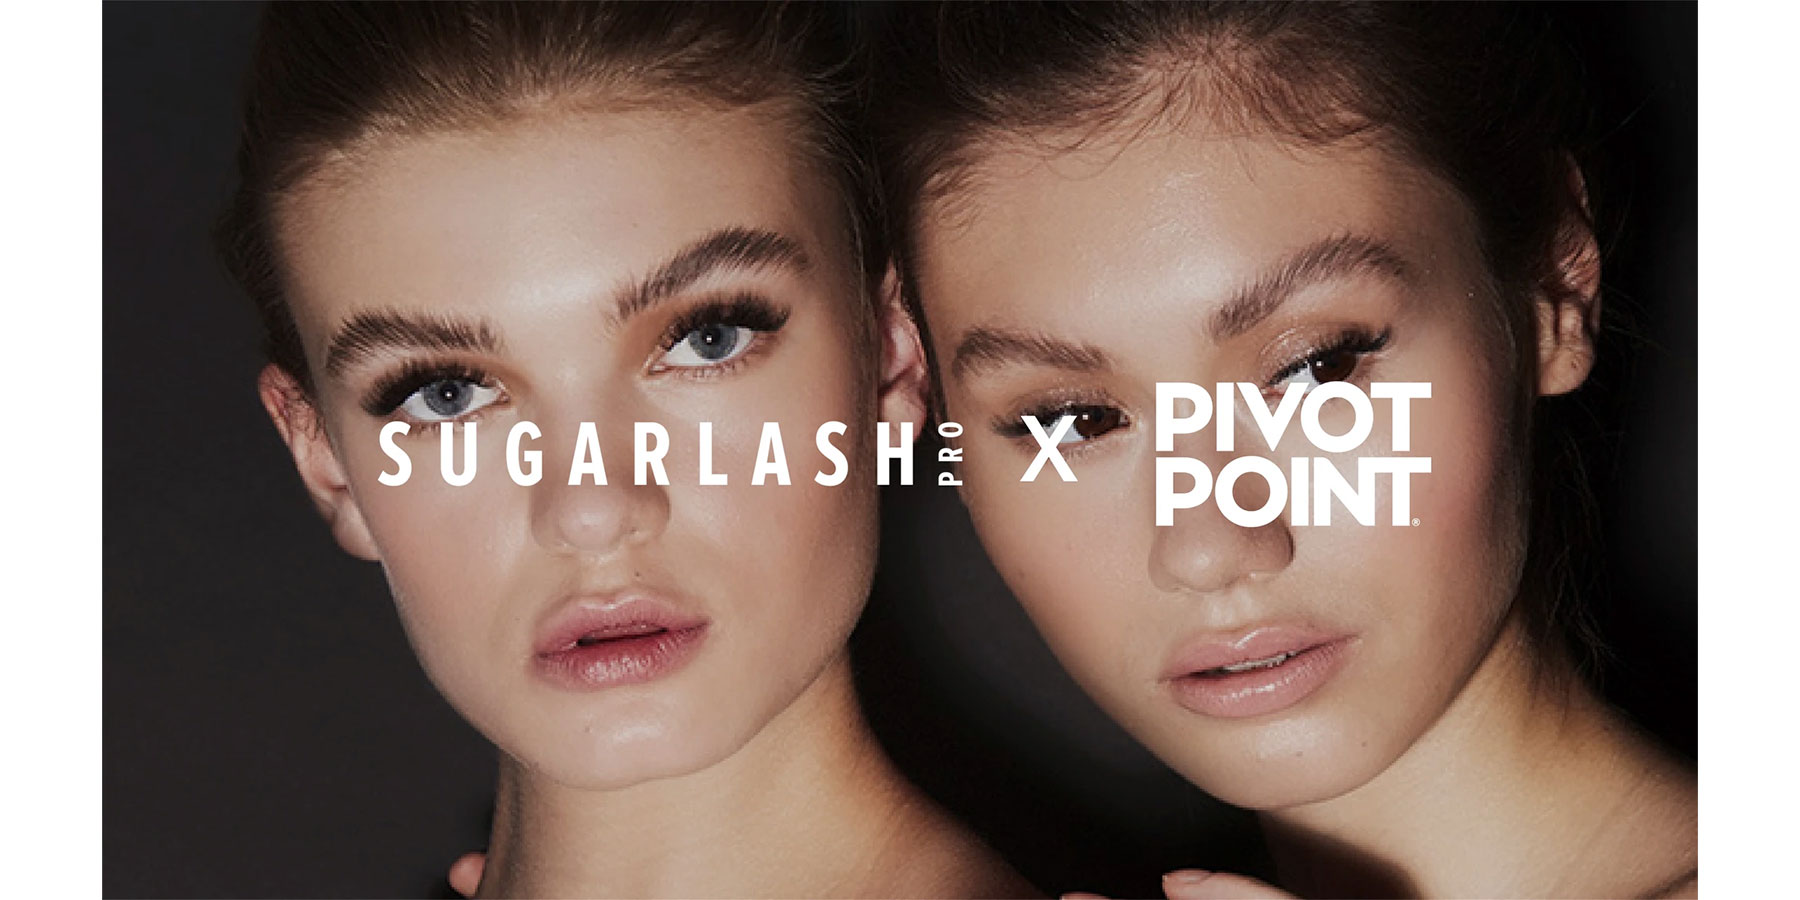 Sugarlash PRO & Pivot Point International